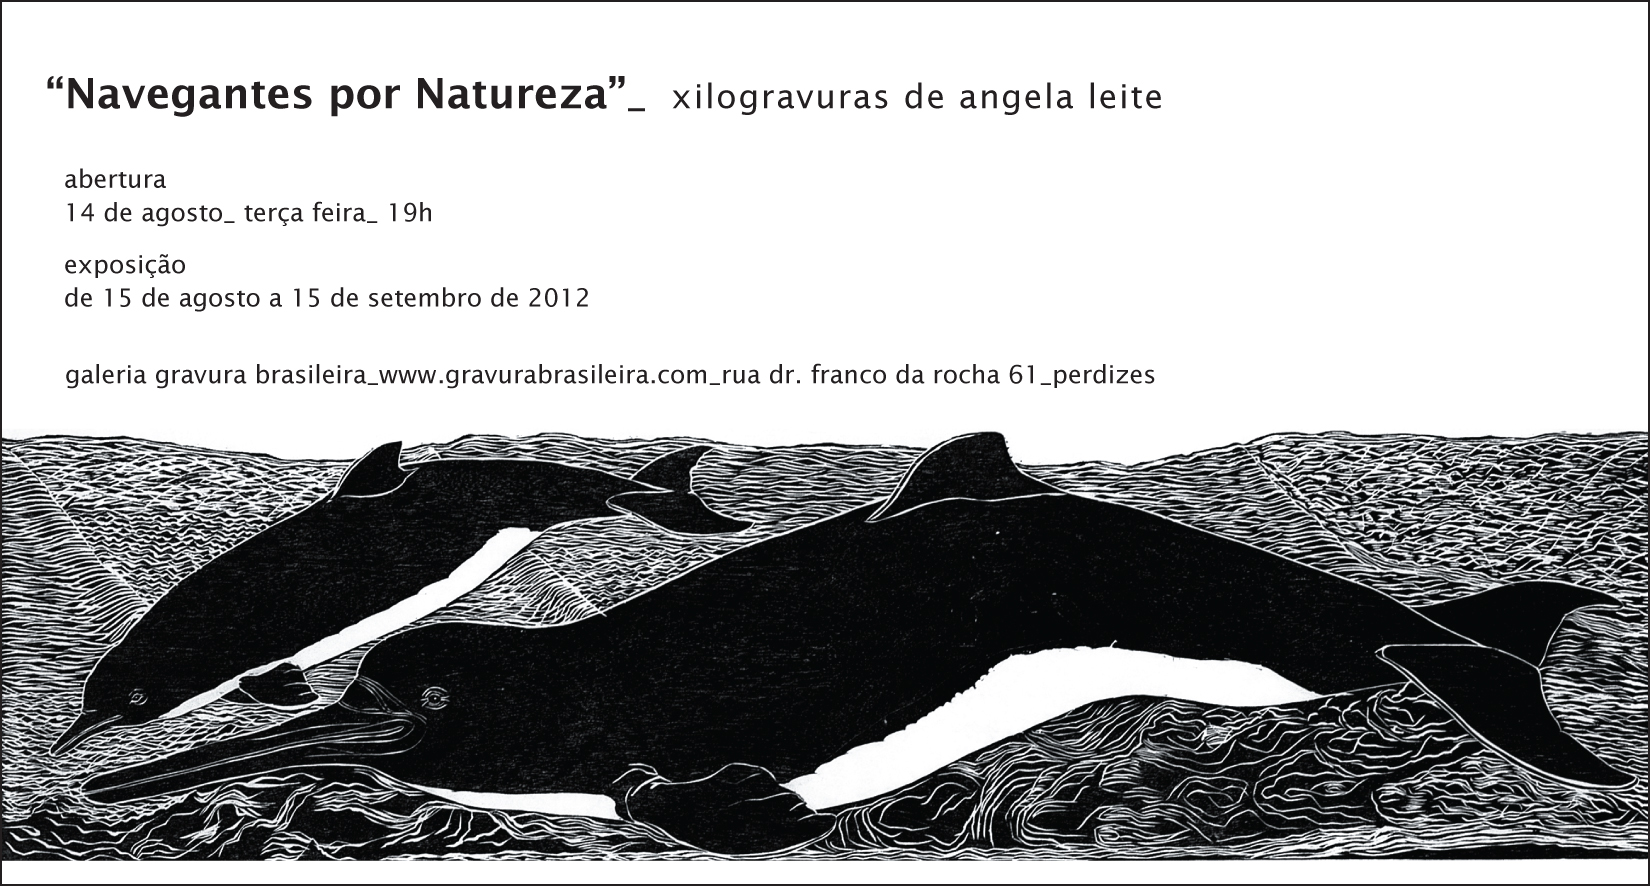 Convite exposição Angela Leite - Navegantes por Natureza